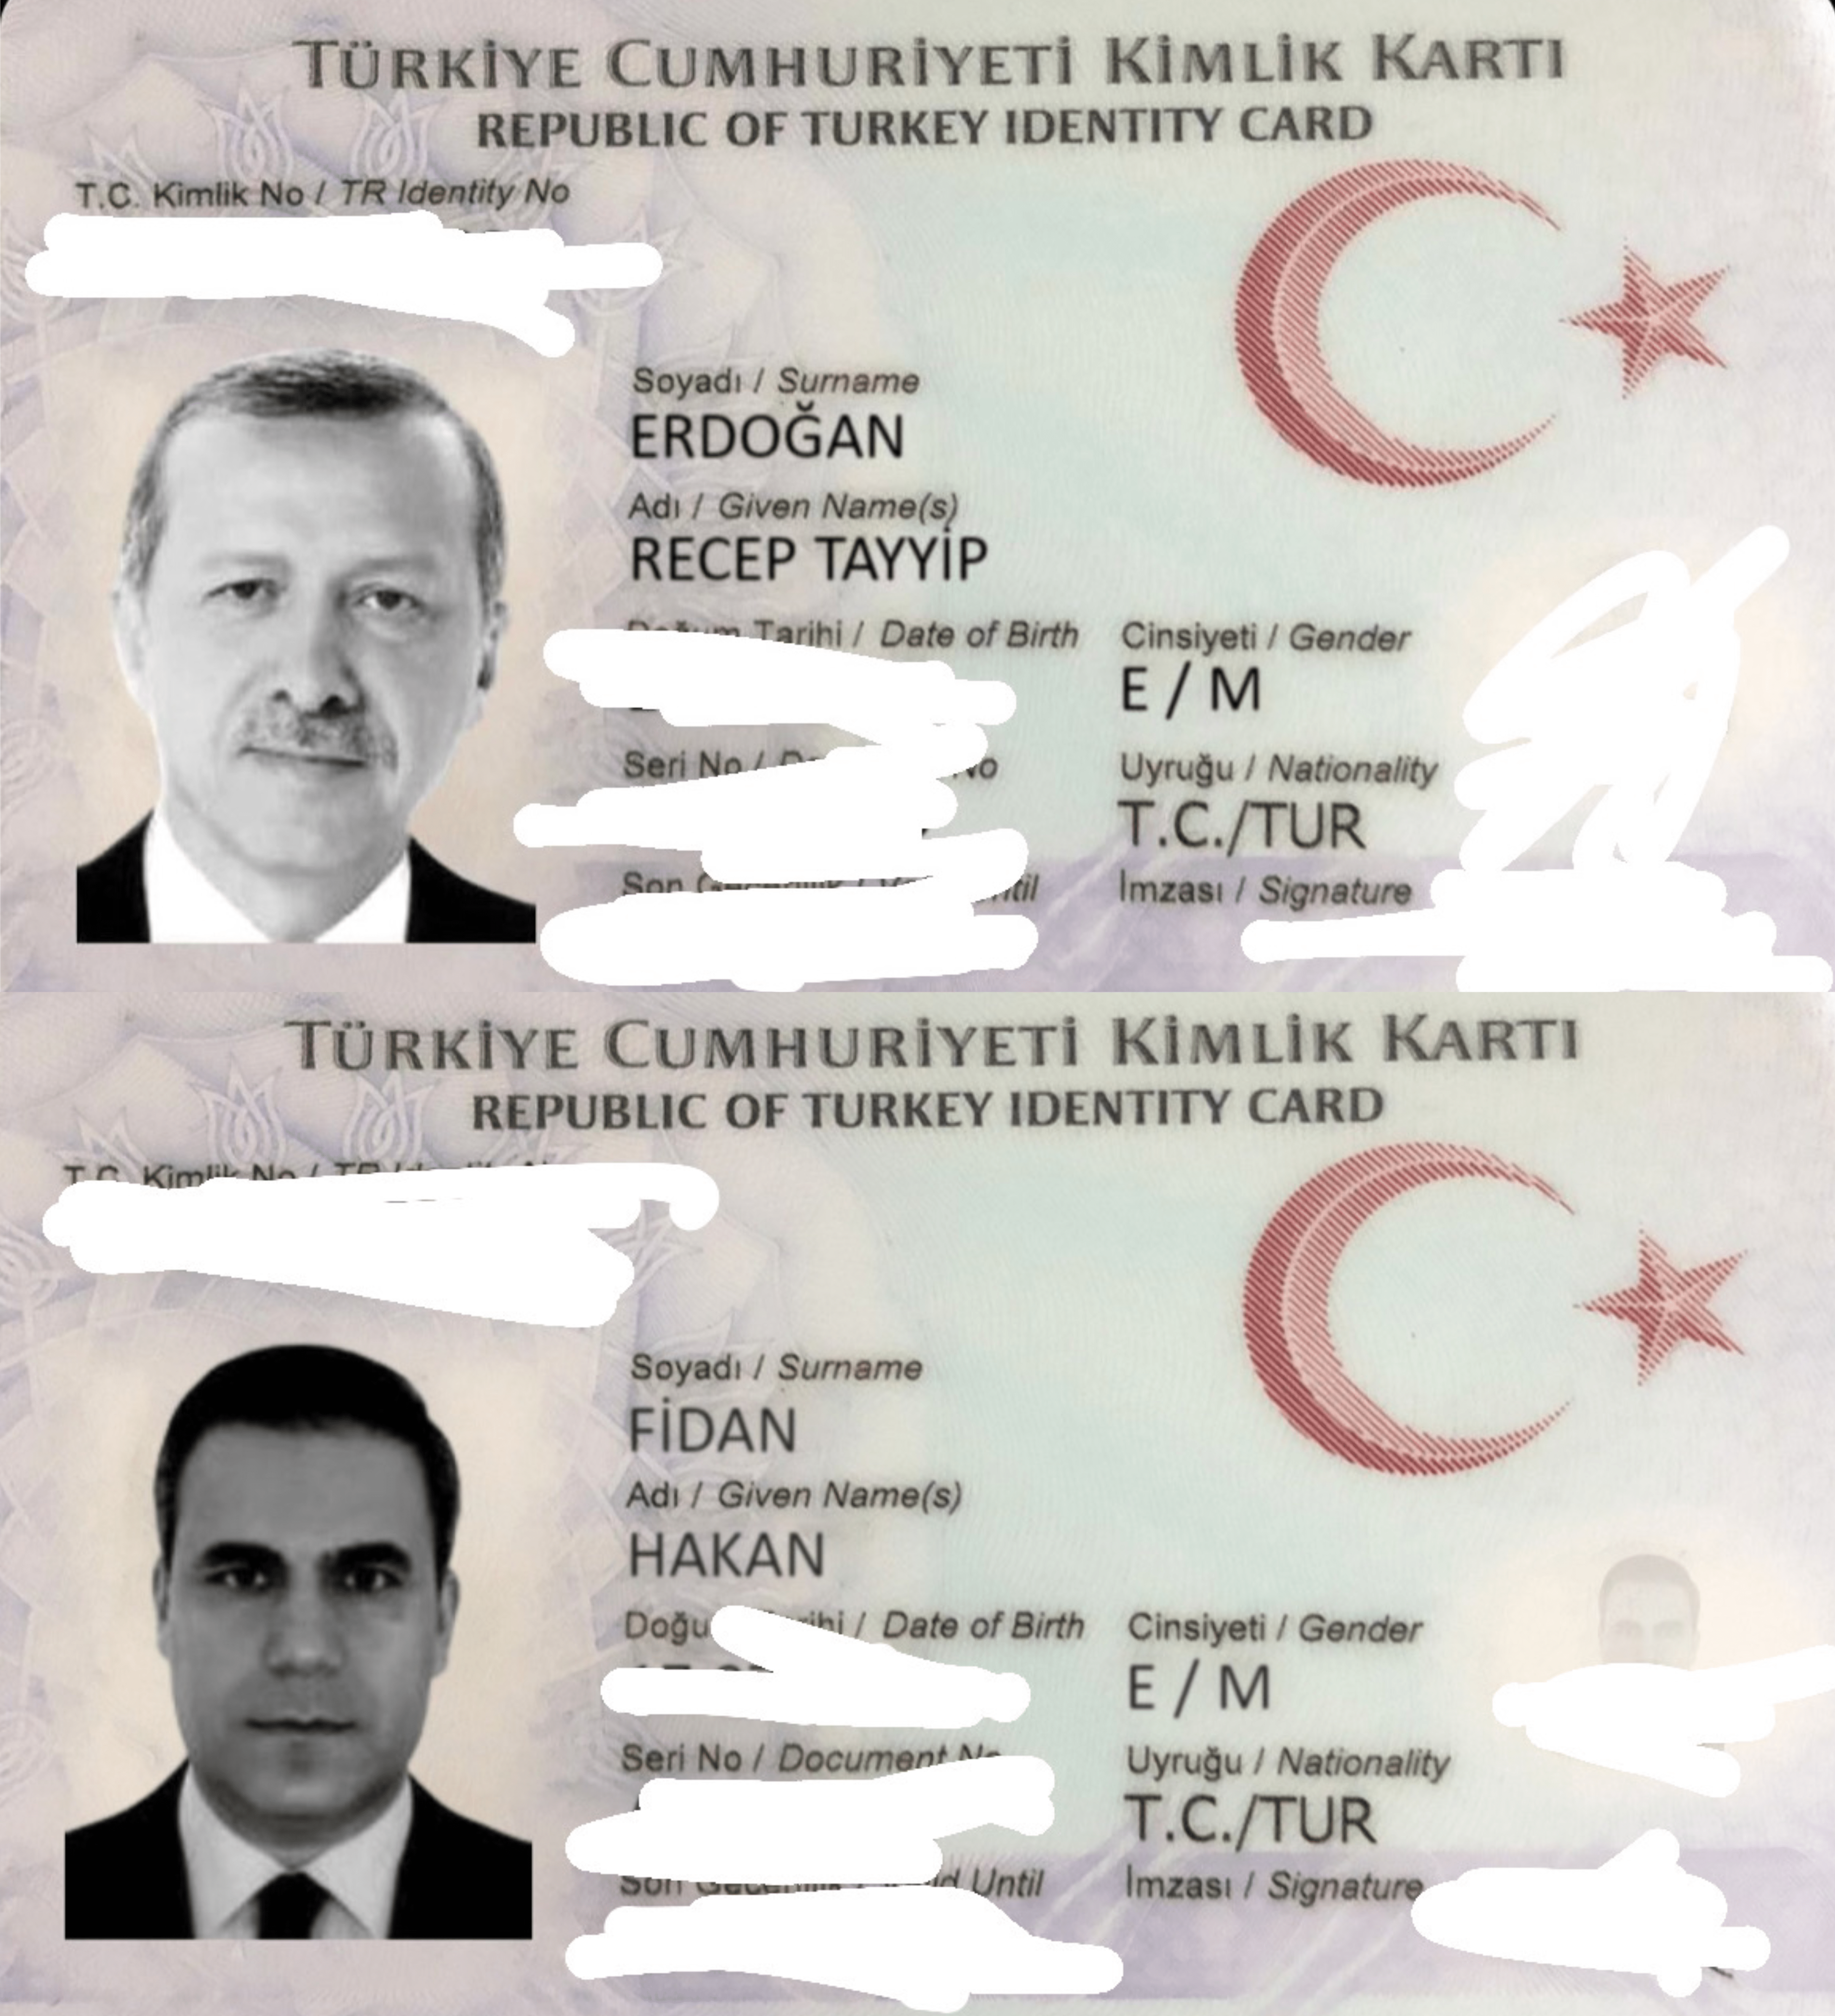 Συνελήφθη Τούρκος δημοσιογράφος που δημοσίευσε την ταυτότητα του Ερντογάν μέσω διαρροής